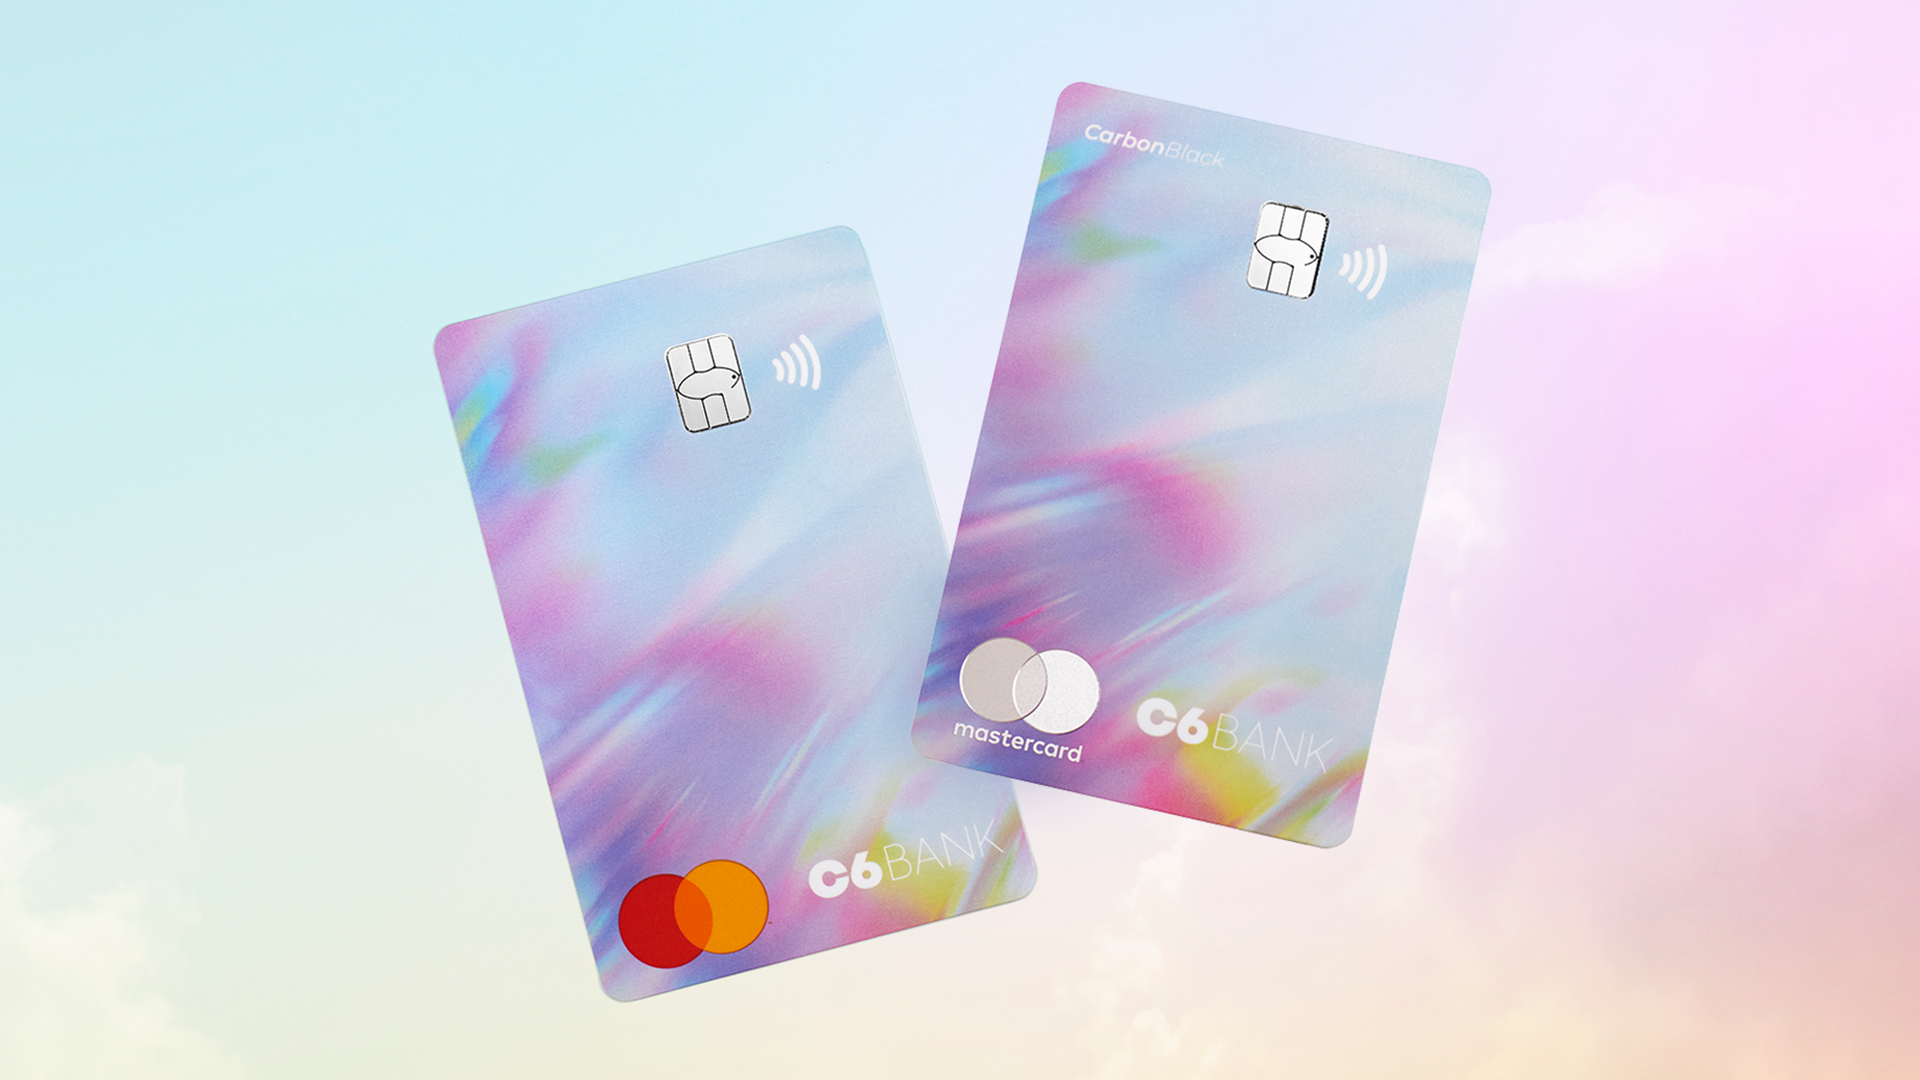 Imagem dos cartões C6 e Carbon na versão Rainbow